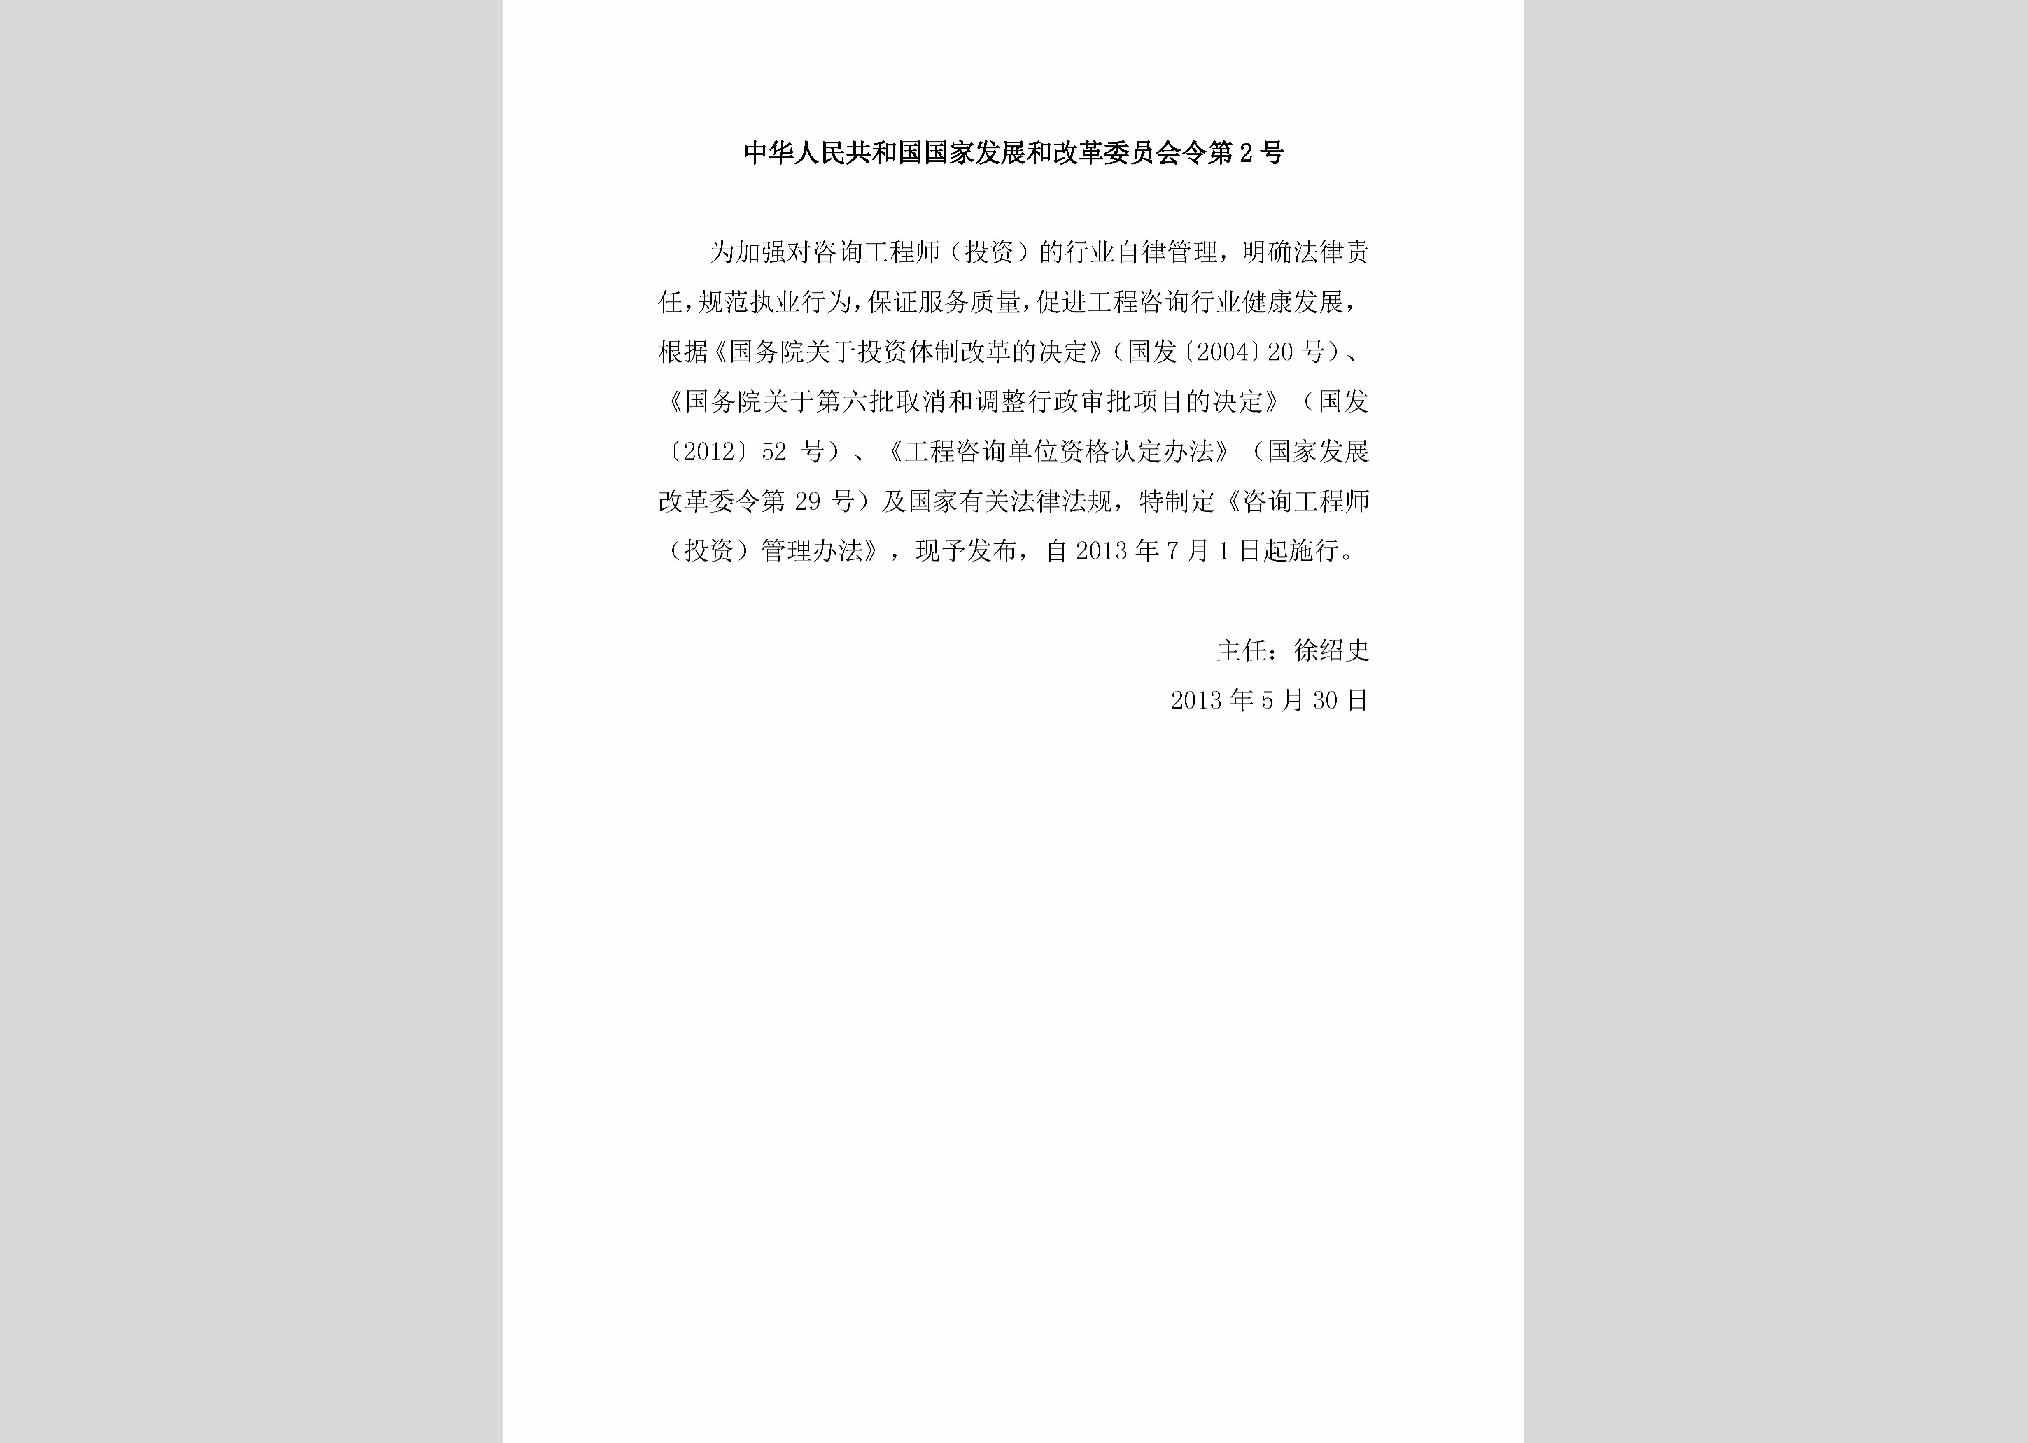 中华人民共和国国家发展和改革委员会令第2号：咨询工程师（投资）管理办法